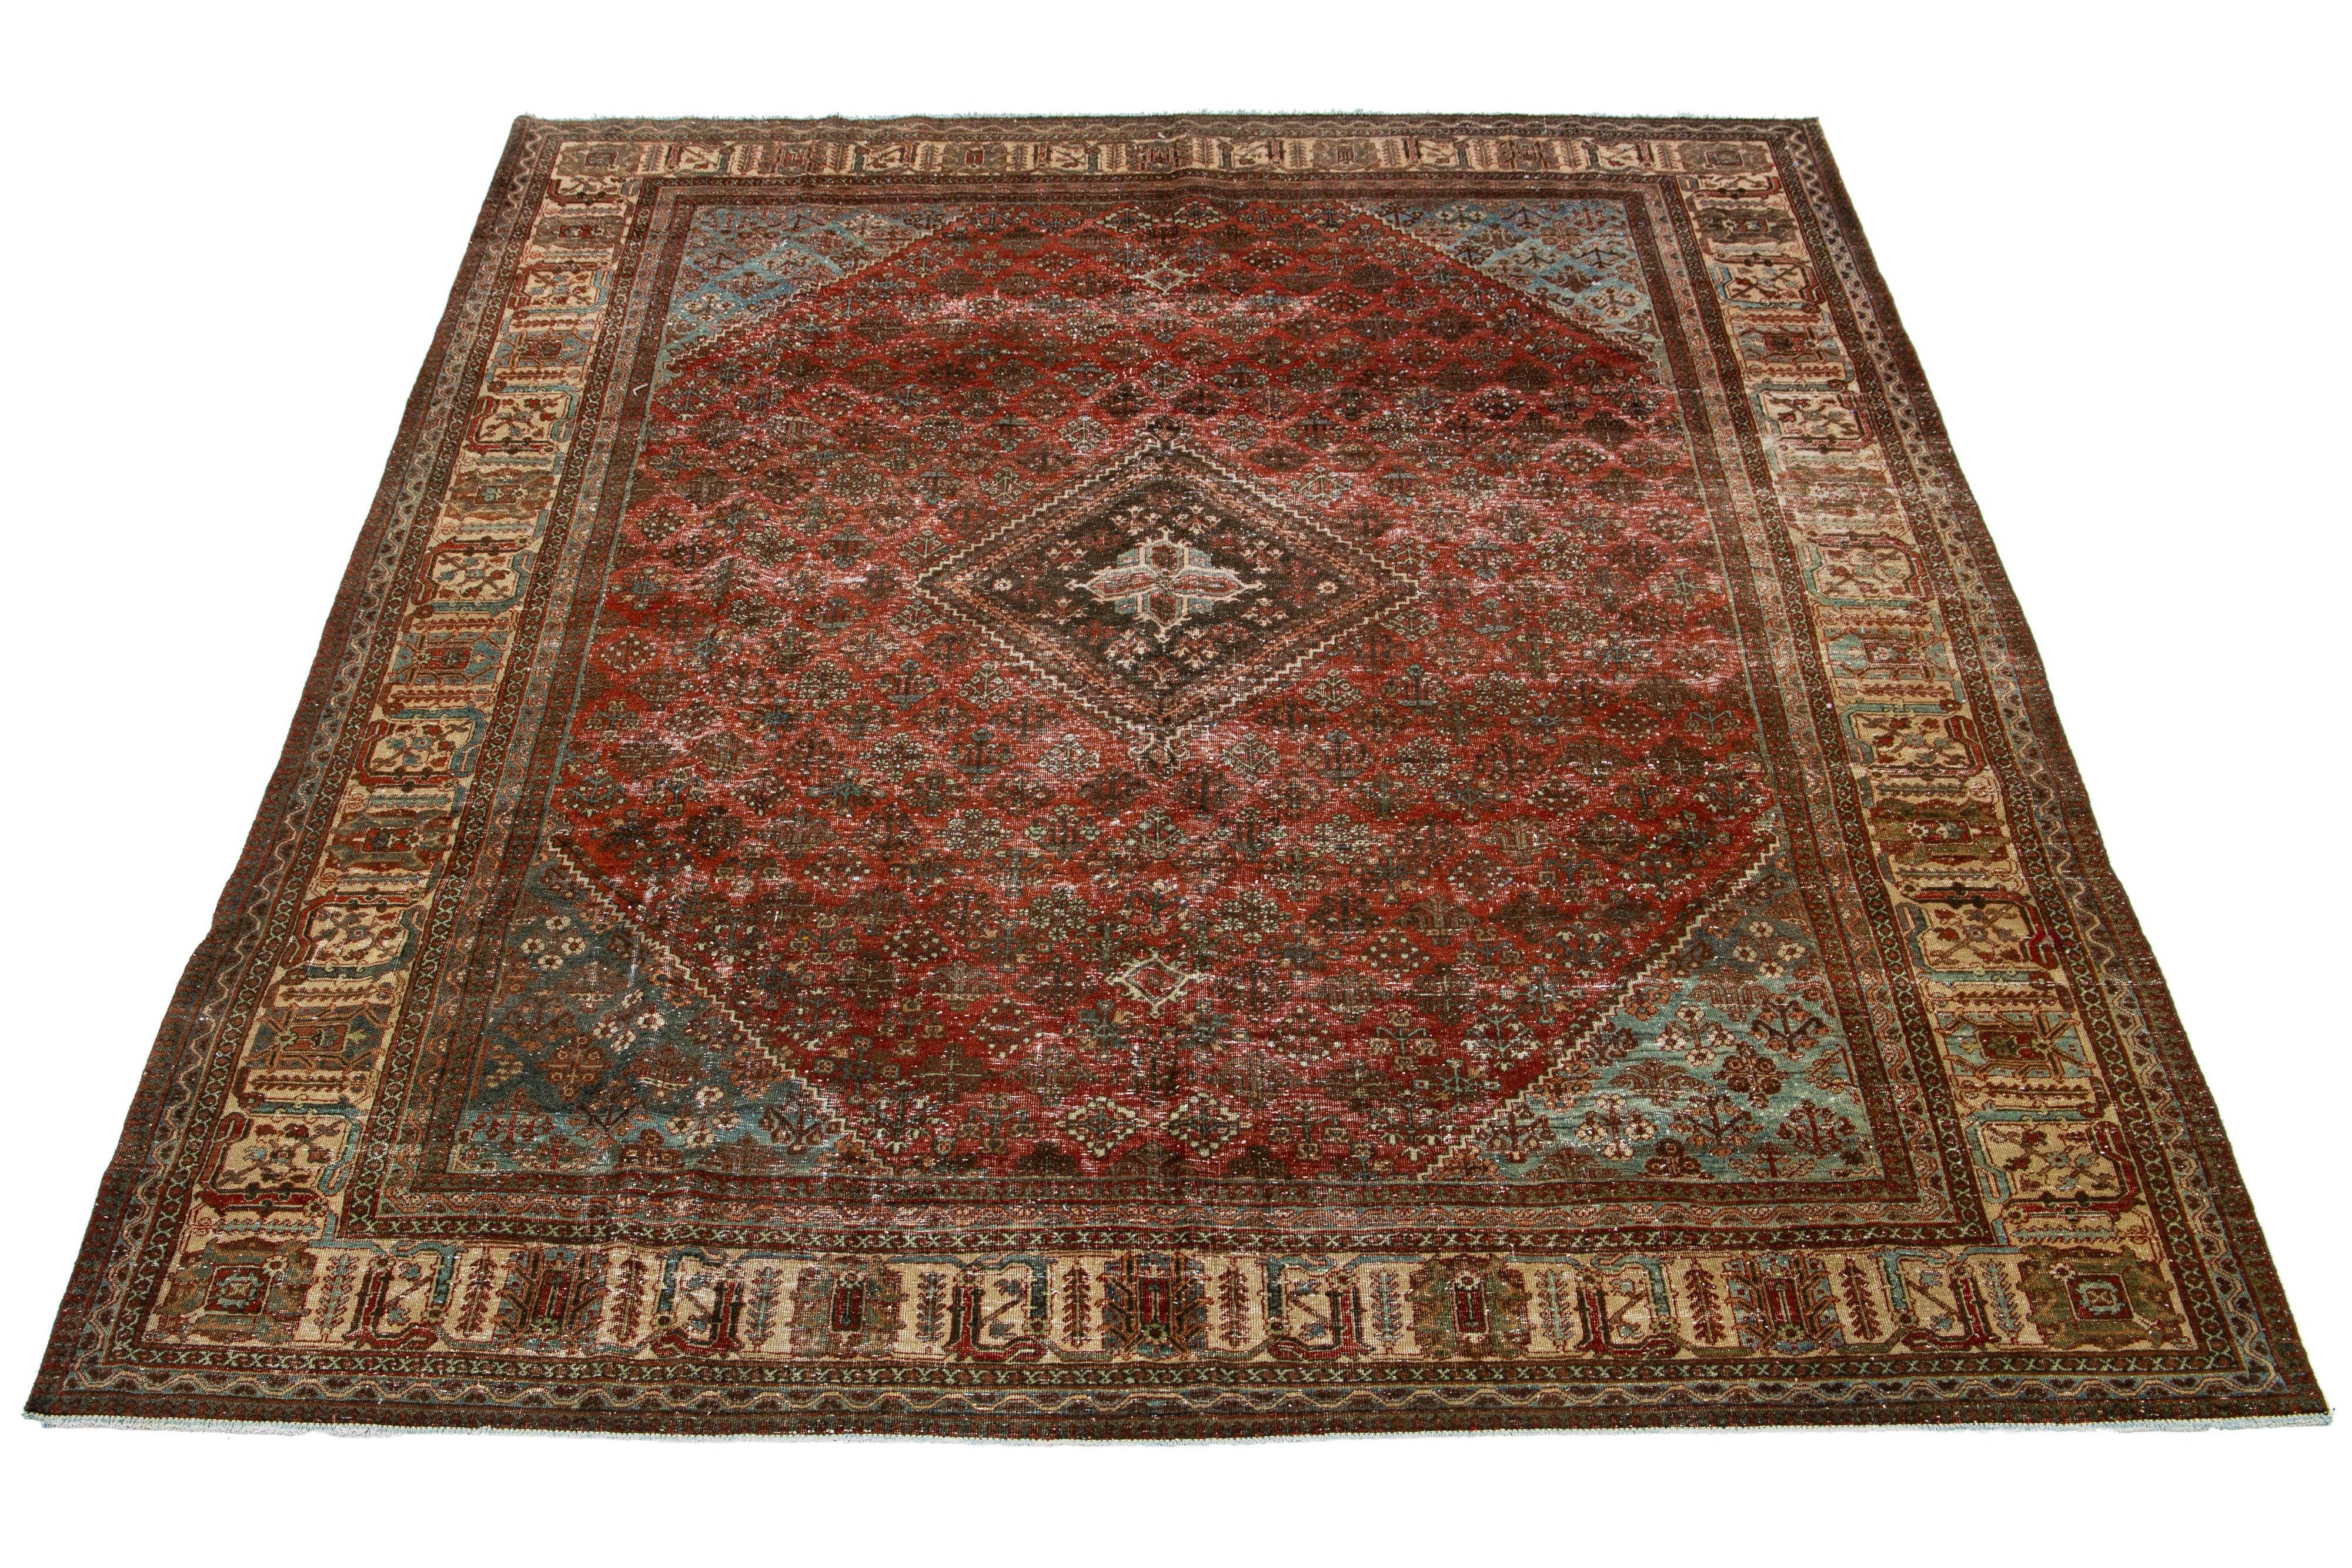 Dieser Josheghan Teppich aus persischer Wolle, antik handgeknüpft aus hochwertiger Wolle, zeigt ein verführerisches ziegelrotes Feld mit beigen und blauen Akzenten, arrangiert in einem faszinierenden floralen All-Over-Design.

Dieser Teppich misst